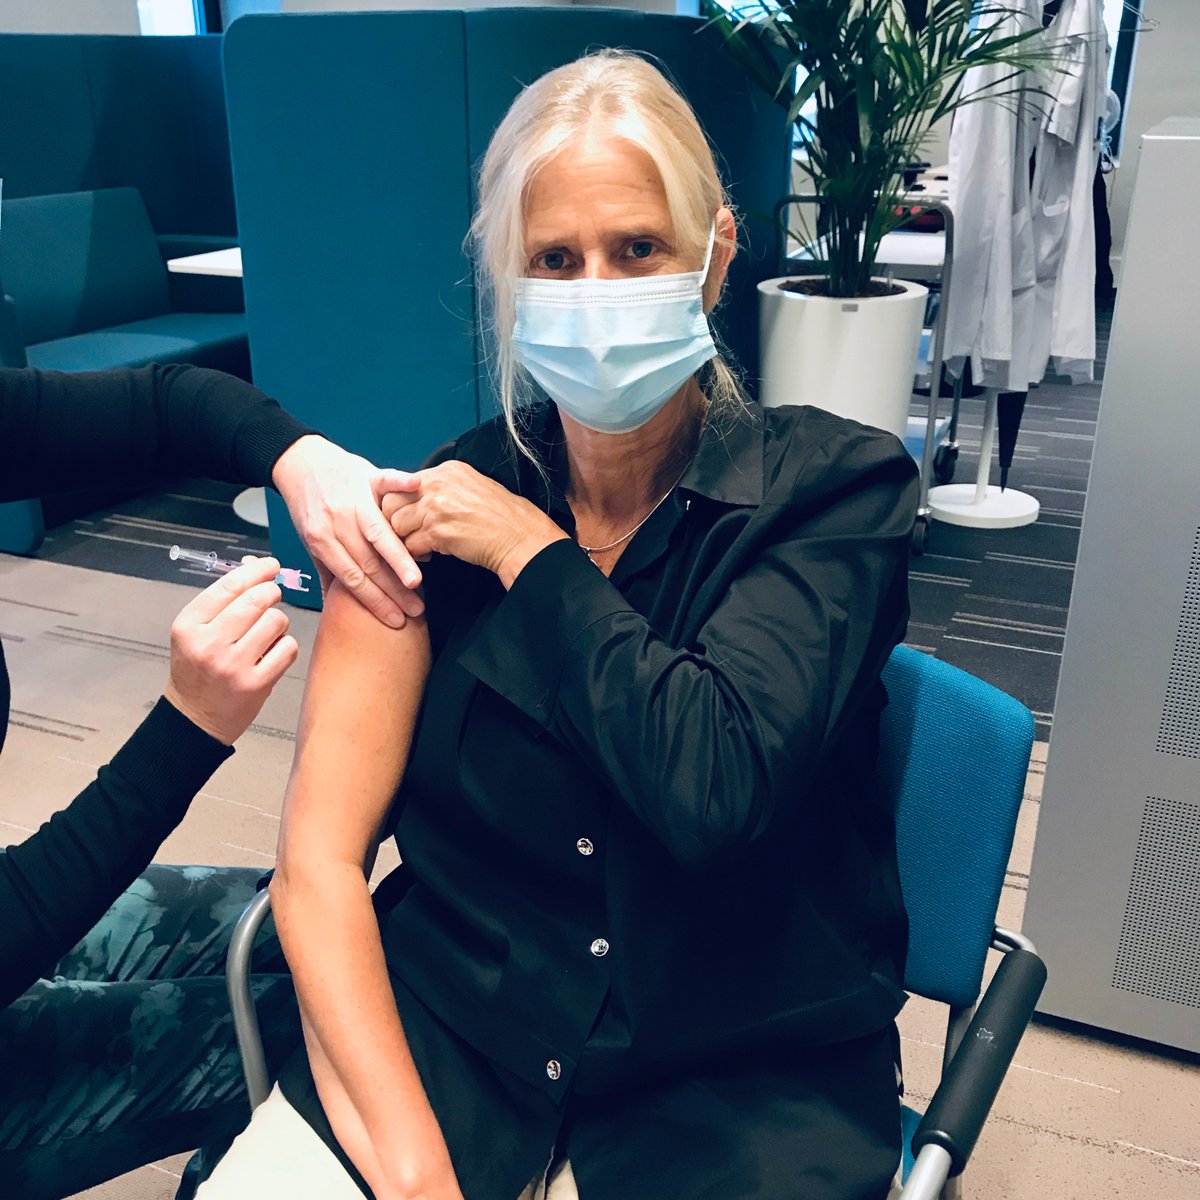 Patienten met IBD maar ook zorgmedewerkers hebben een uitnodiging gekregen om zich te laten vaccineren tegen de griep @CrohnColitisNL MDL-arts en prof. Janneke vd Woude heeft net de #griepprik gekregen @ErasmusMC Haal jij hem ook?